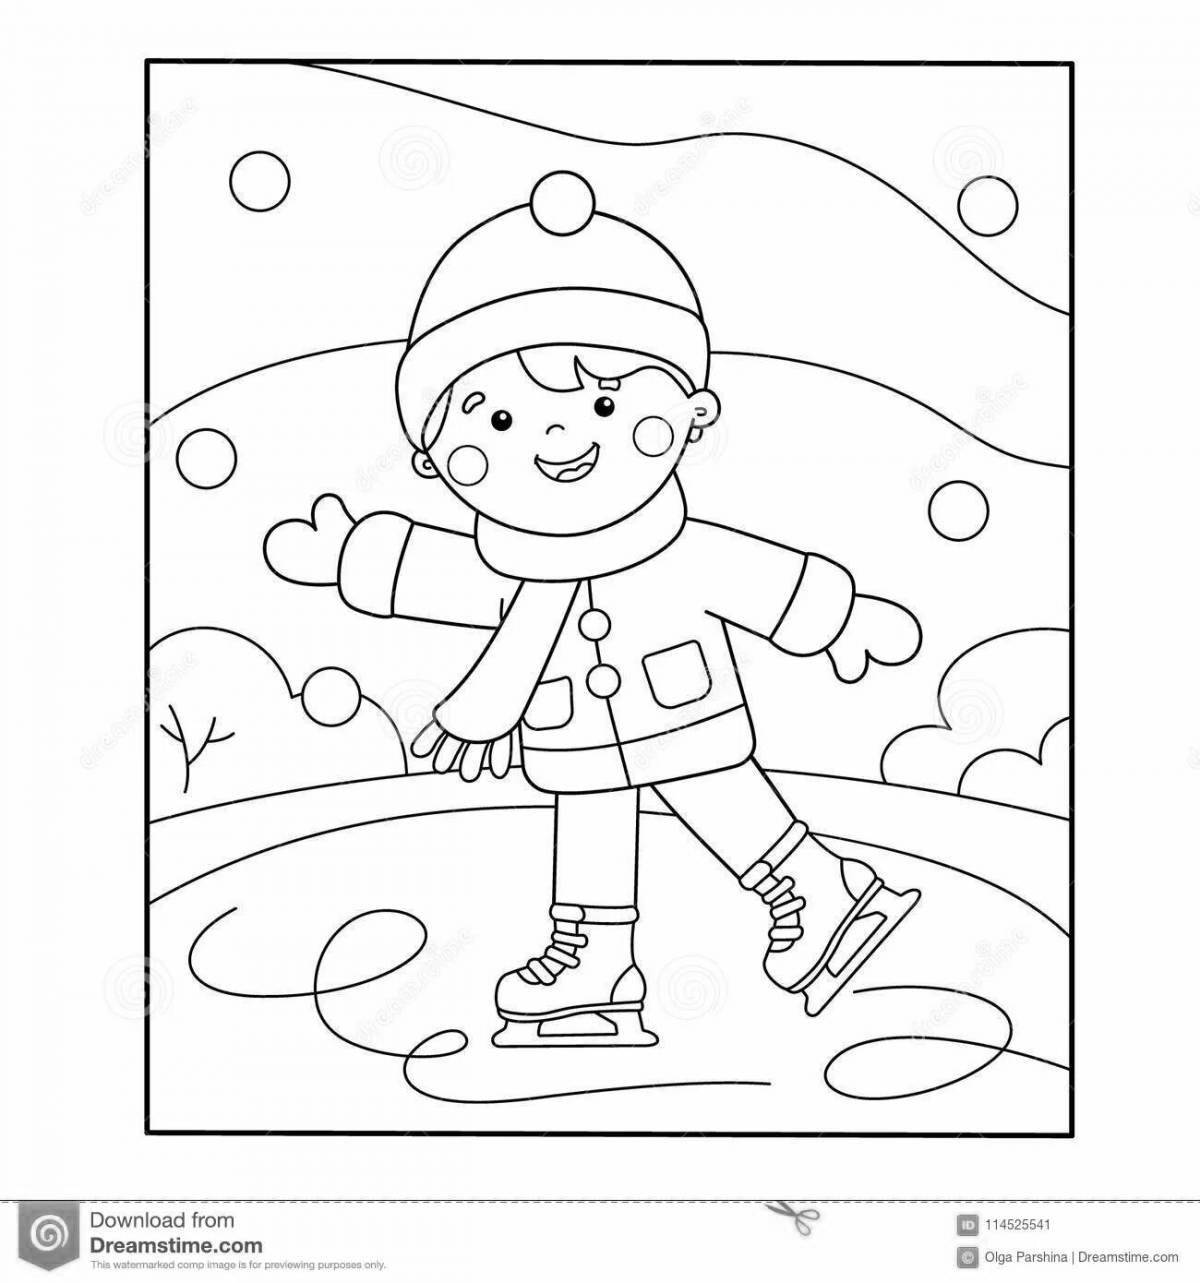 Веселая раскраска для детей о зимних видах спорта